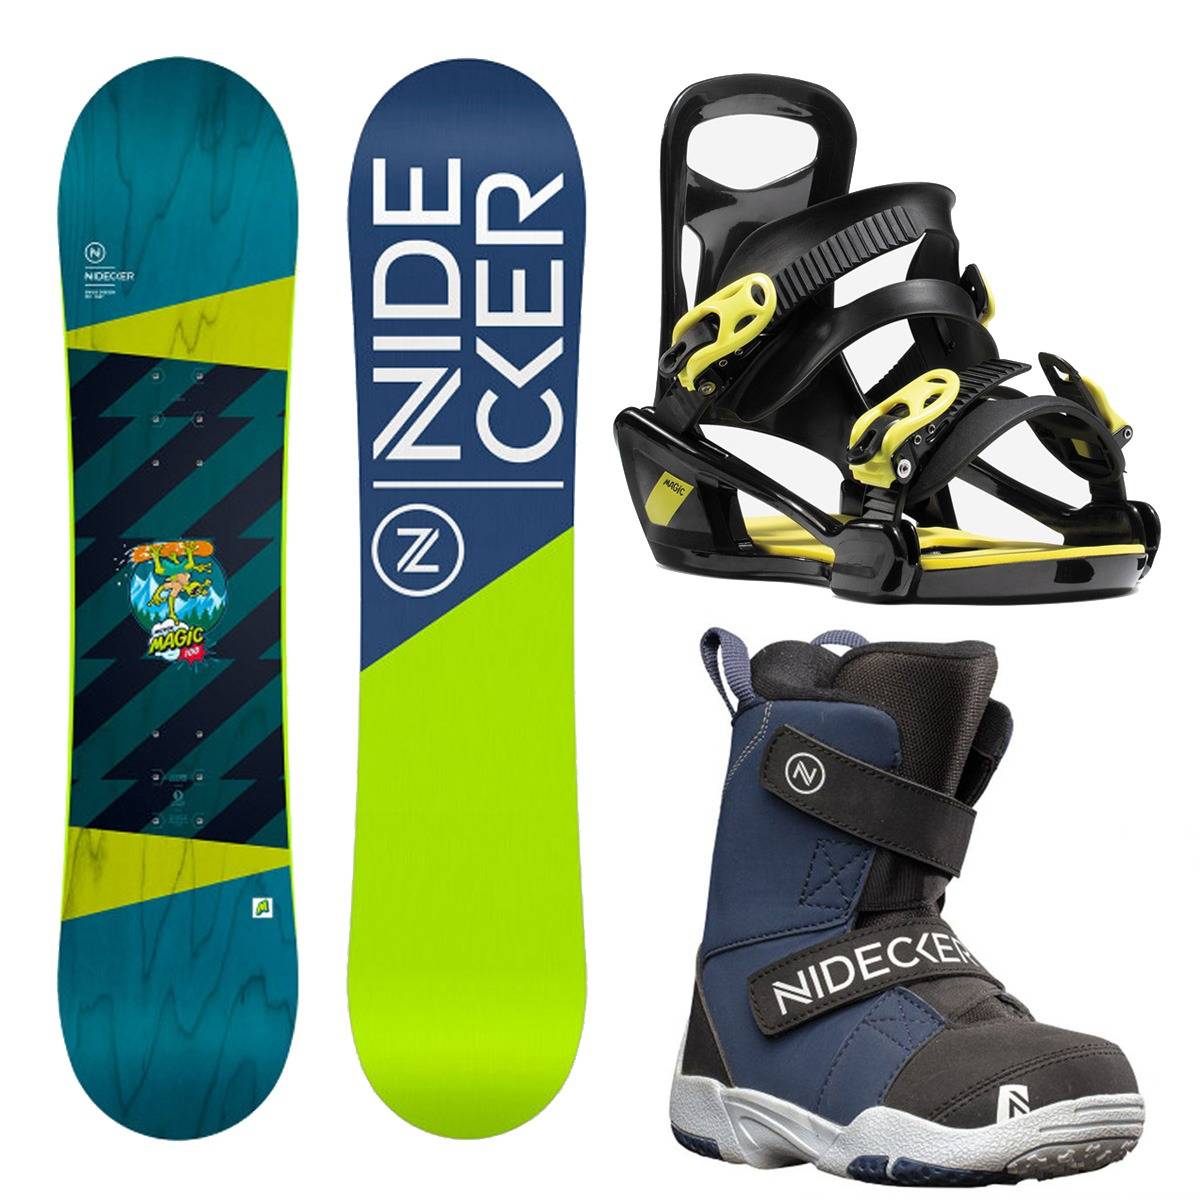 Kids nidecker snowboard package